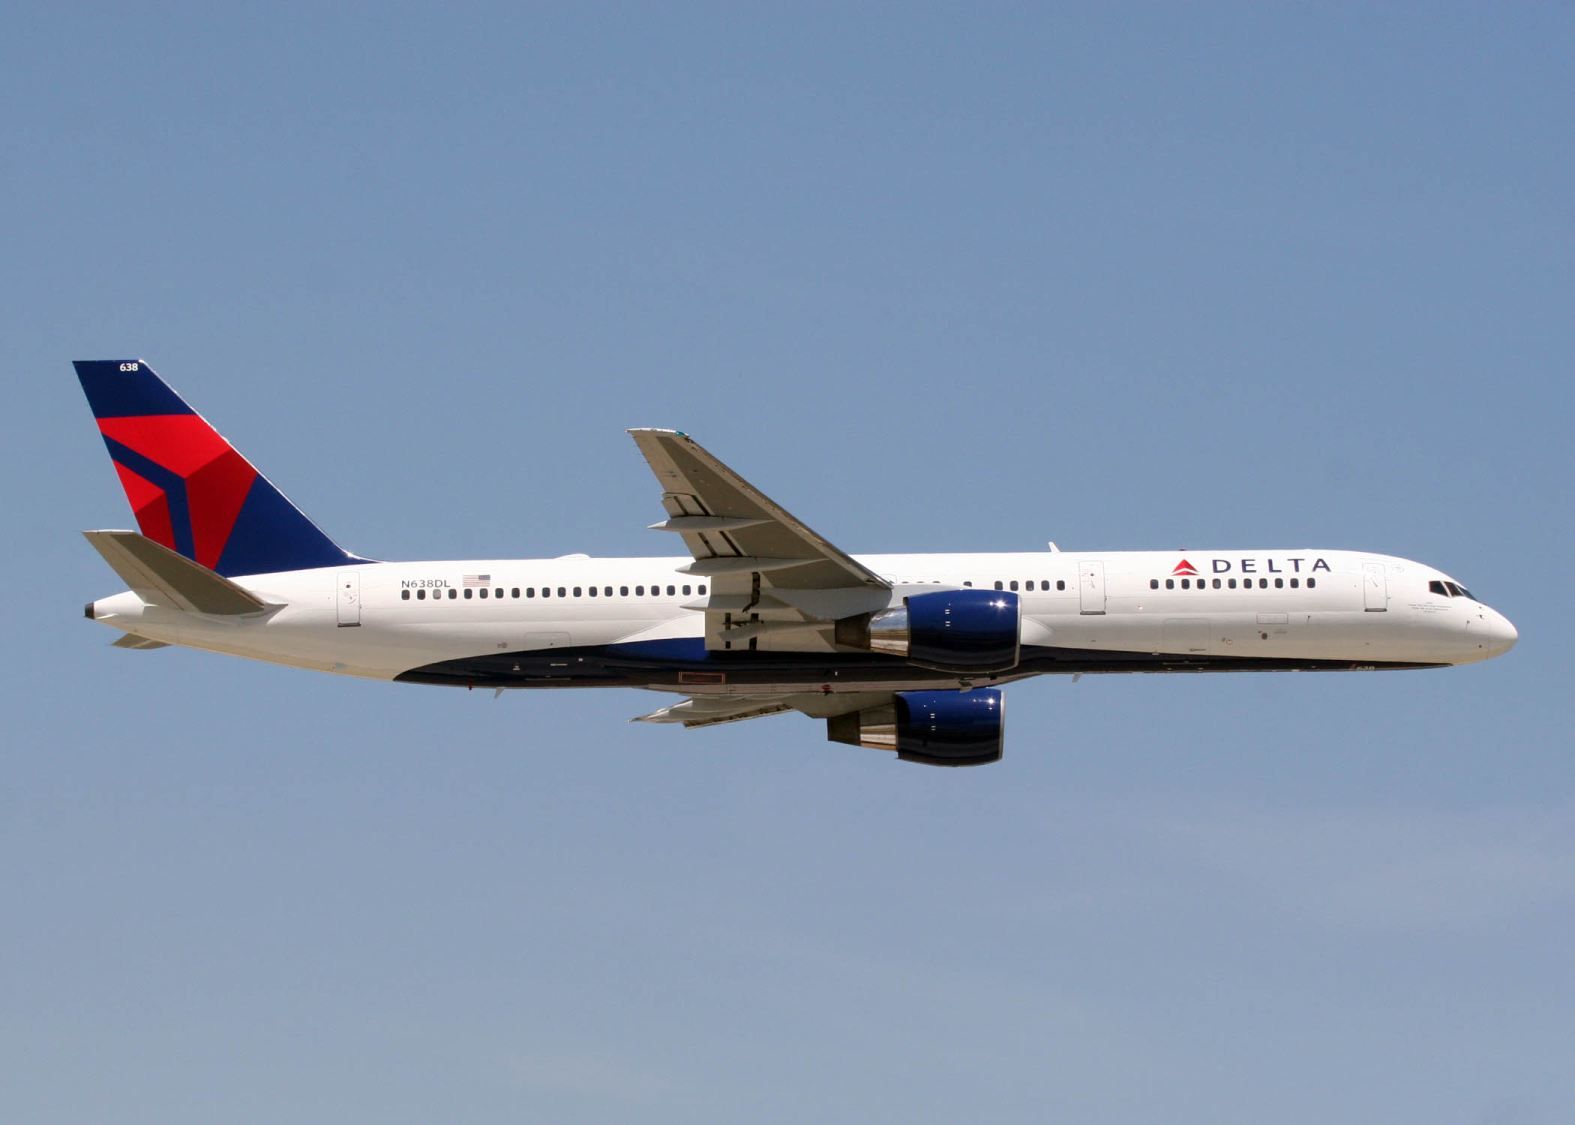 A Delta komoly 757-es flottát repültet